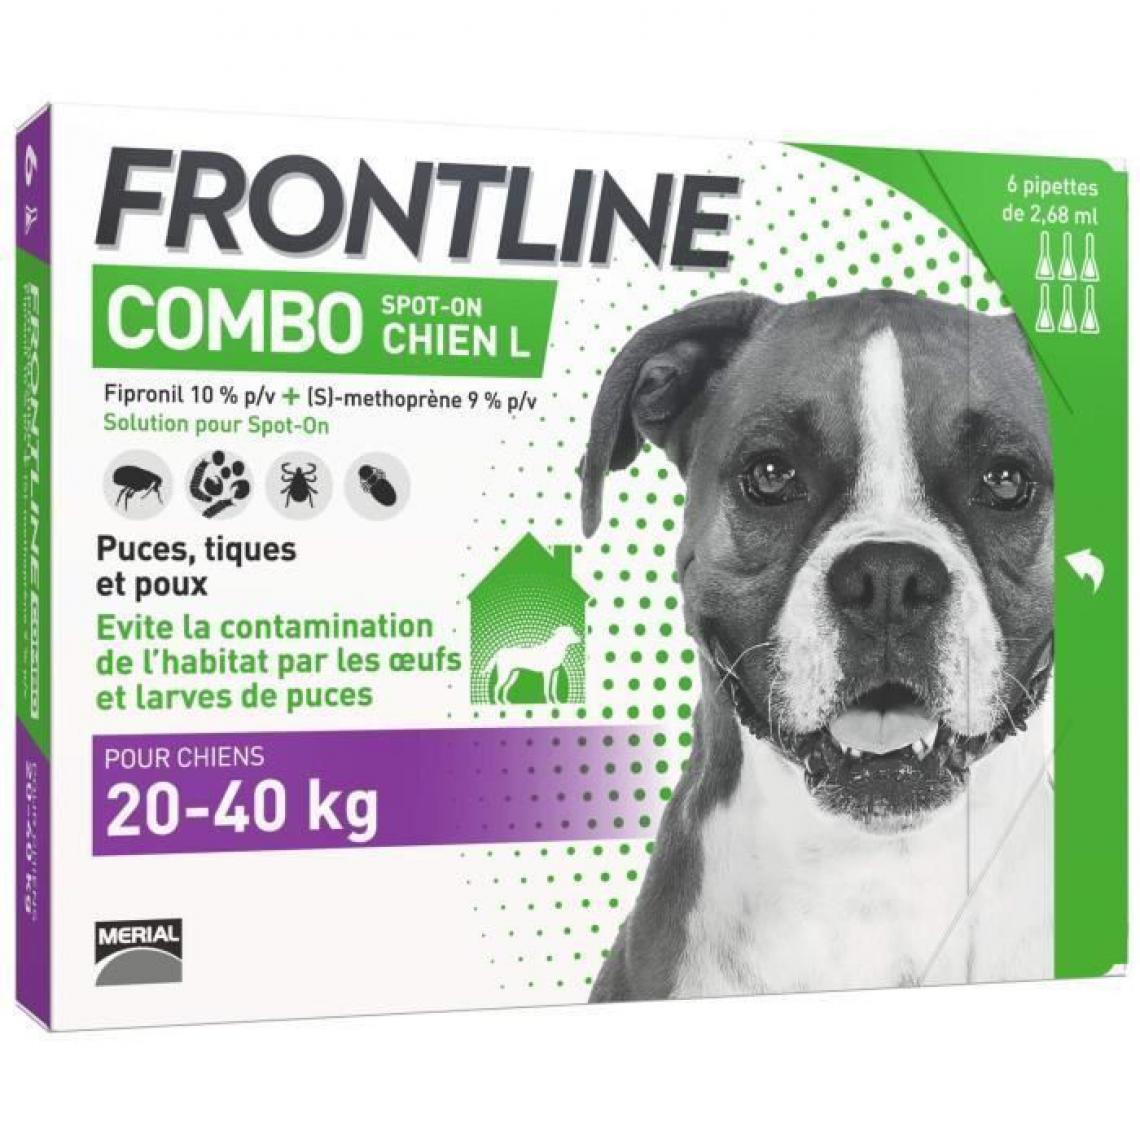 Frontline - FRONTLINE Combo chien 20-40kg - 6 pipettes - Anti-parasitaire pour chien